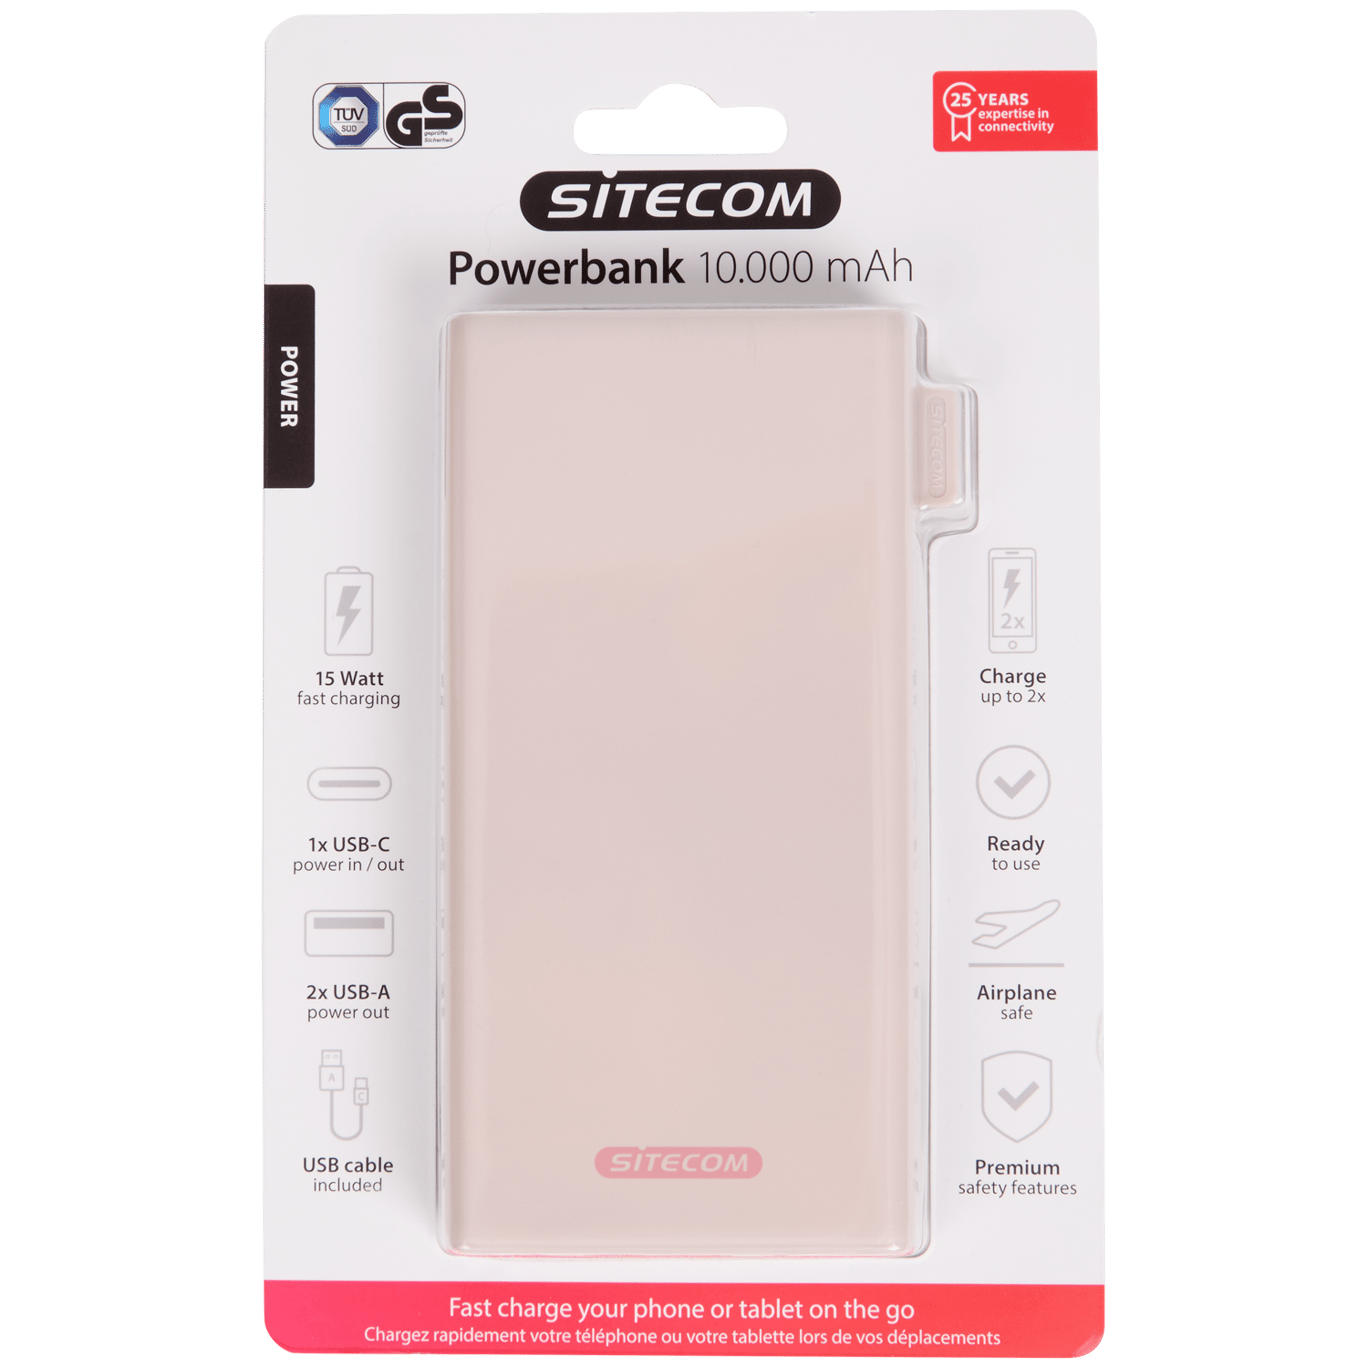 Sitecom powerbank